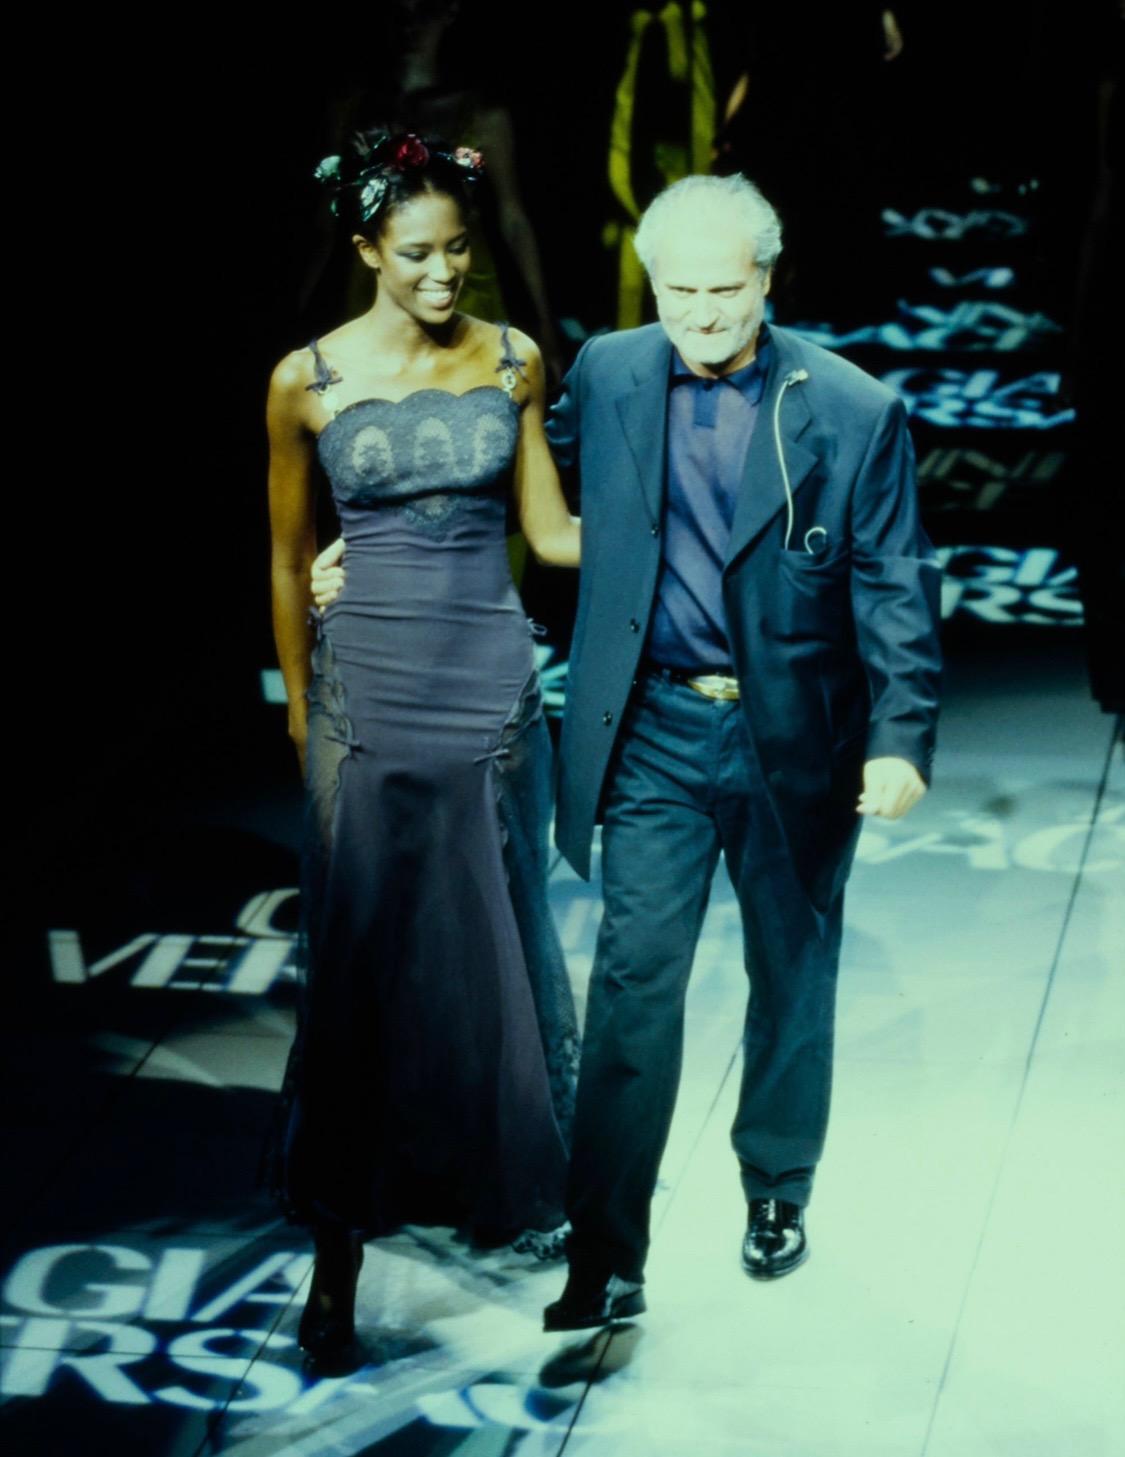 Présentation du grand final du défilé printemps-été 1997 de Gianni Versace. Cette robe a fait ses débuts sur Naomi Campbell, qui a défilé avec Gianni pour clôturer sa dernière collection de printemps. Les volants, les rubans, les nœuds et la